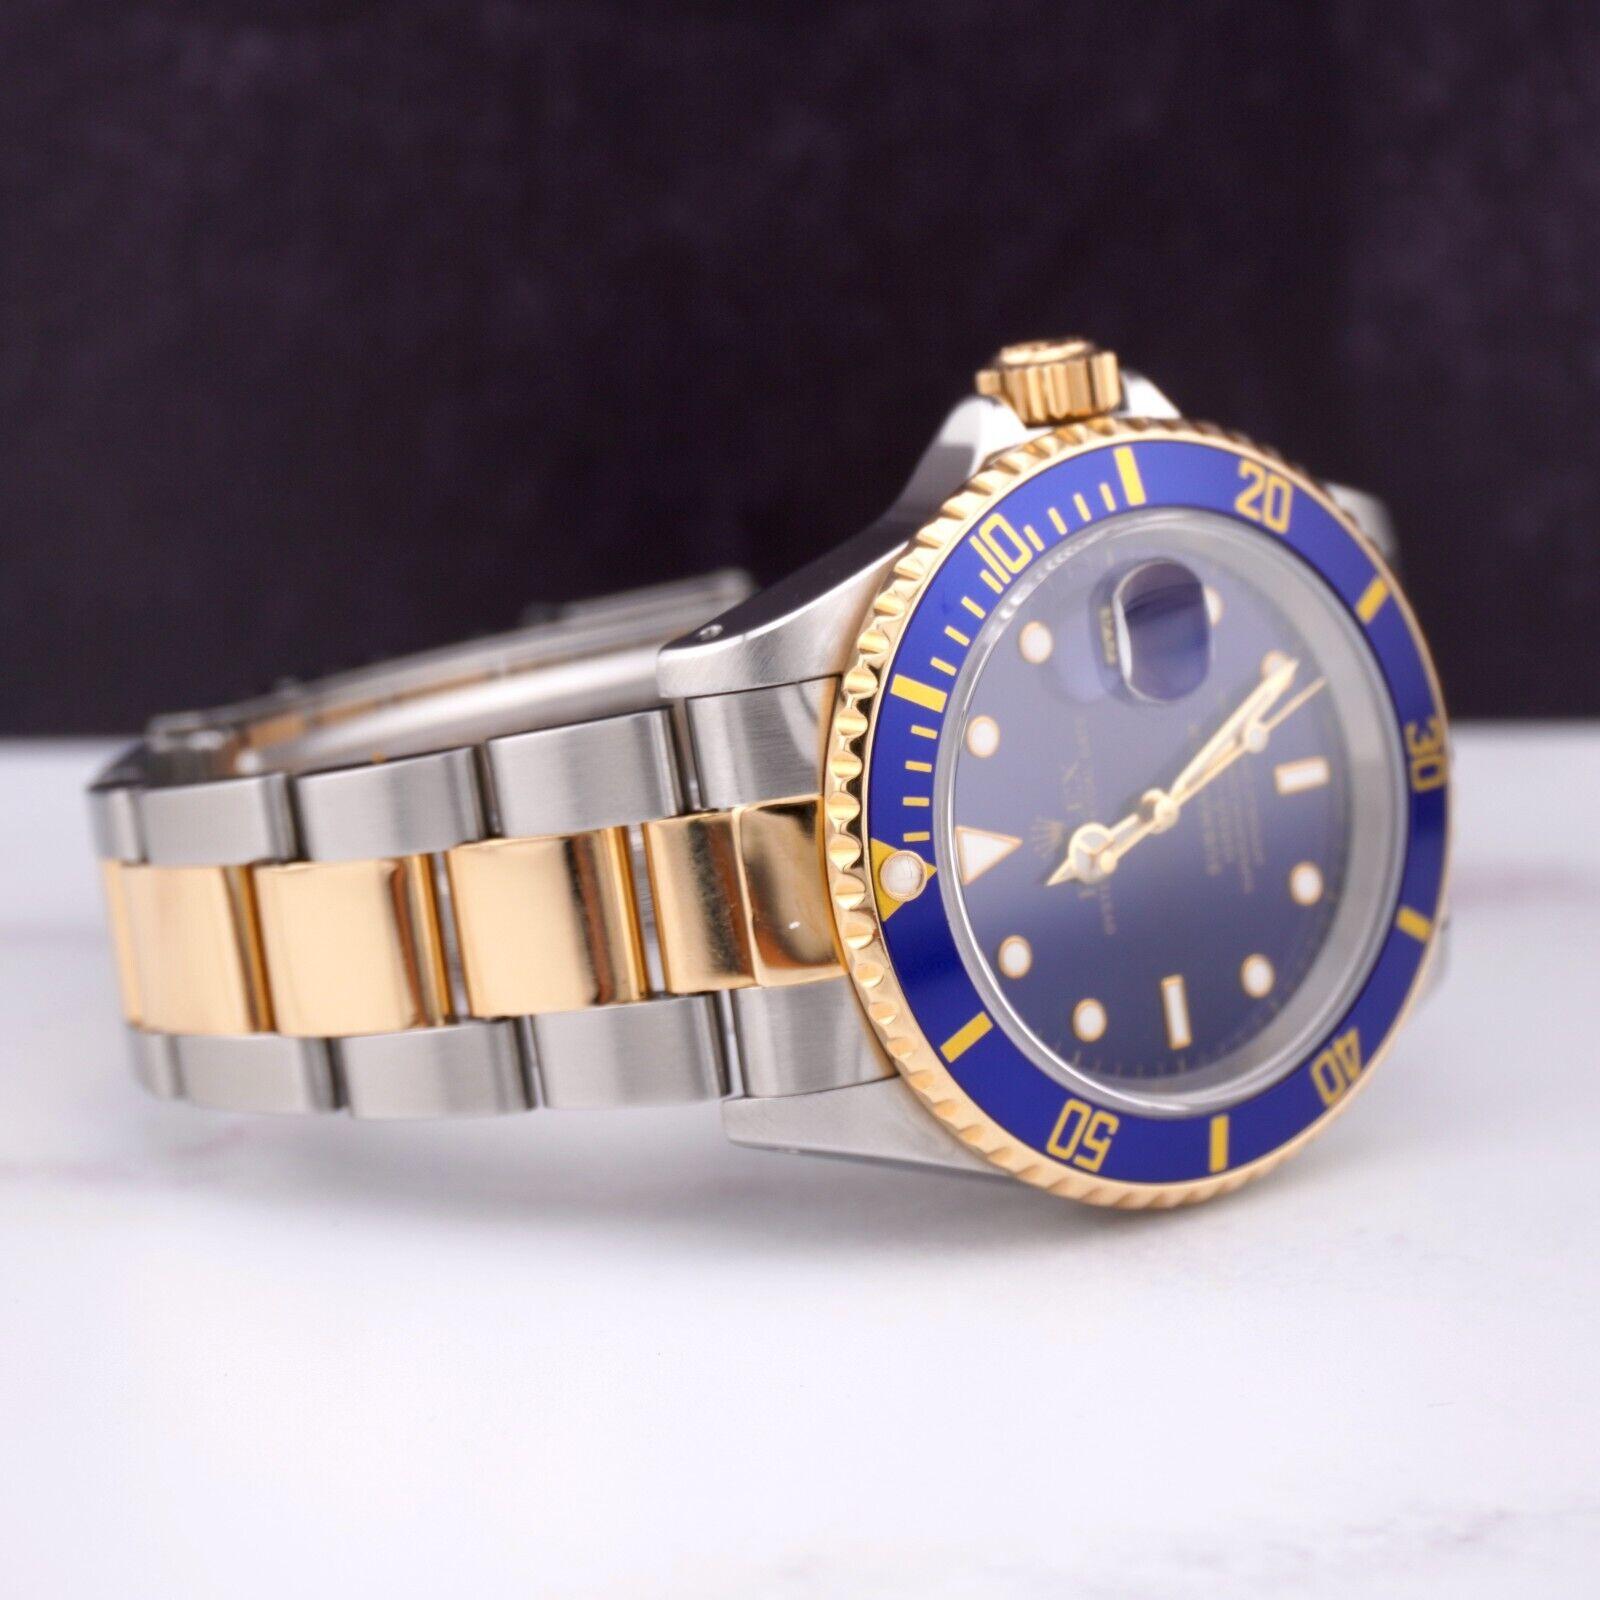 Montre Rolex Submariner 40mm. Une montre d'occasion avec boîte d'origine et papiers 1998. La montre est 100% authentique et est accompagnée d'une carte d'authenticité. La référence de la montre est 16613 et elle est en excellent état (voir photos).